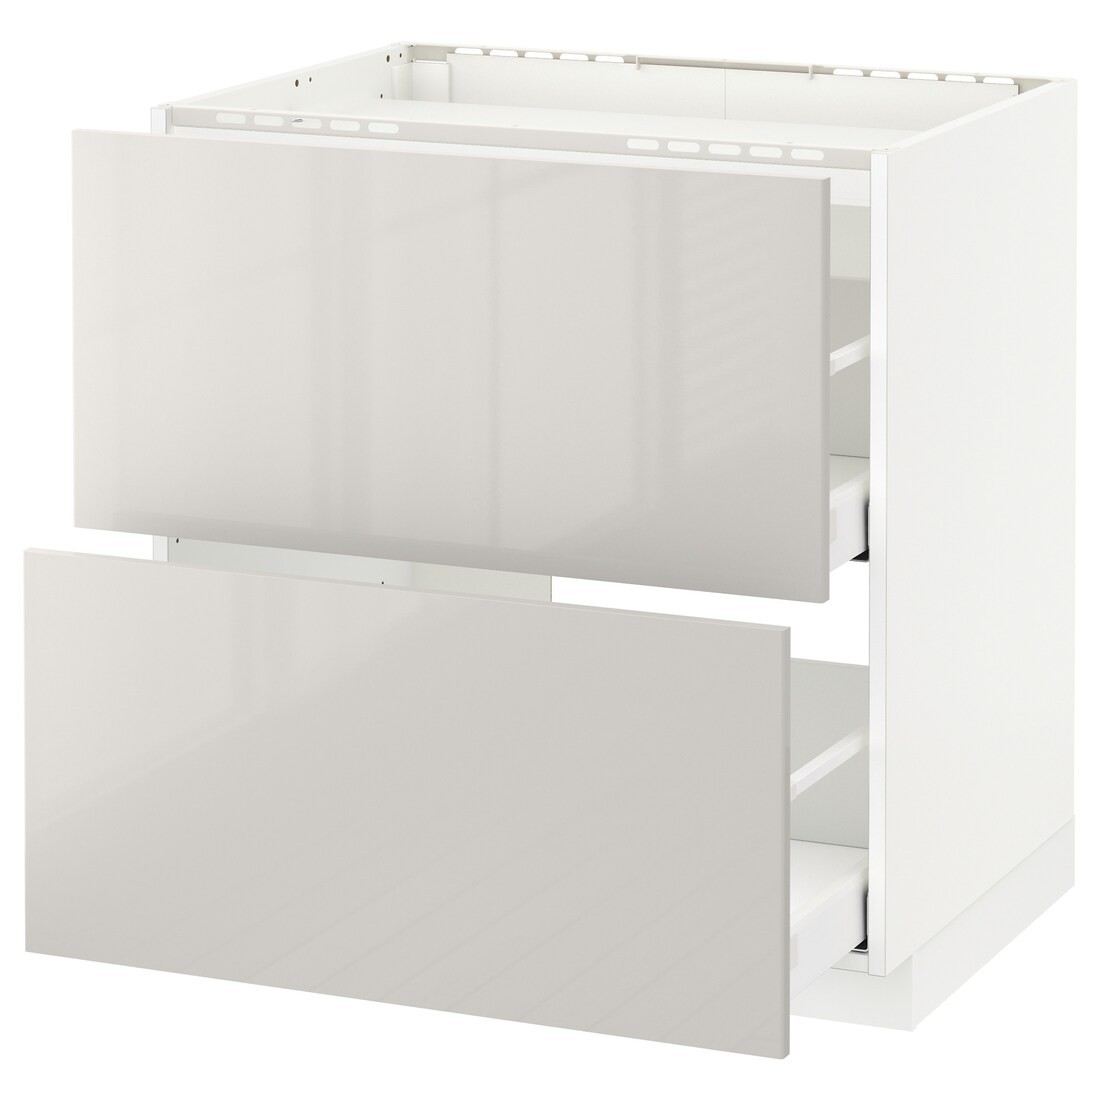 IKEA METOD МЕТОД / MAXIMERA МАКСИМЕРА Напольный шкаф с ящиками, белый / Ringhult светло-серый, 80x60 см 99141968 991.419.68